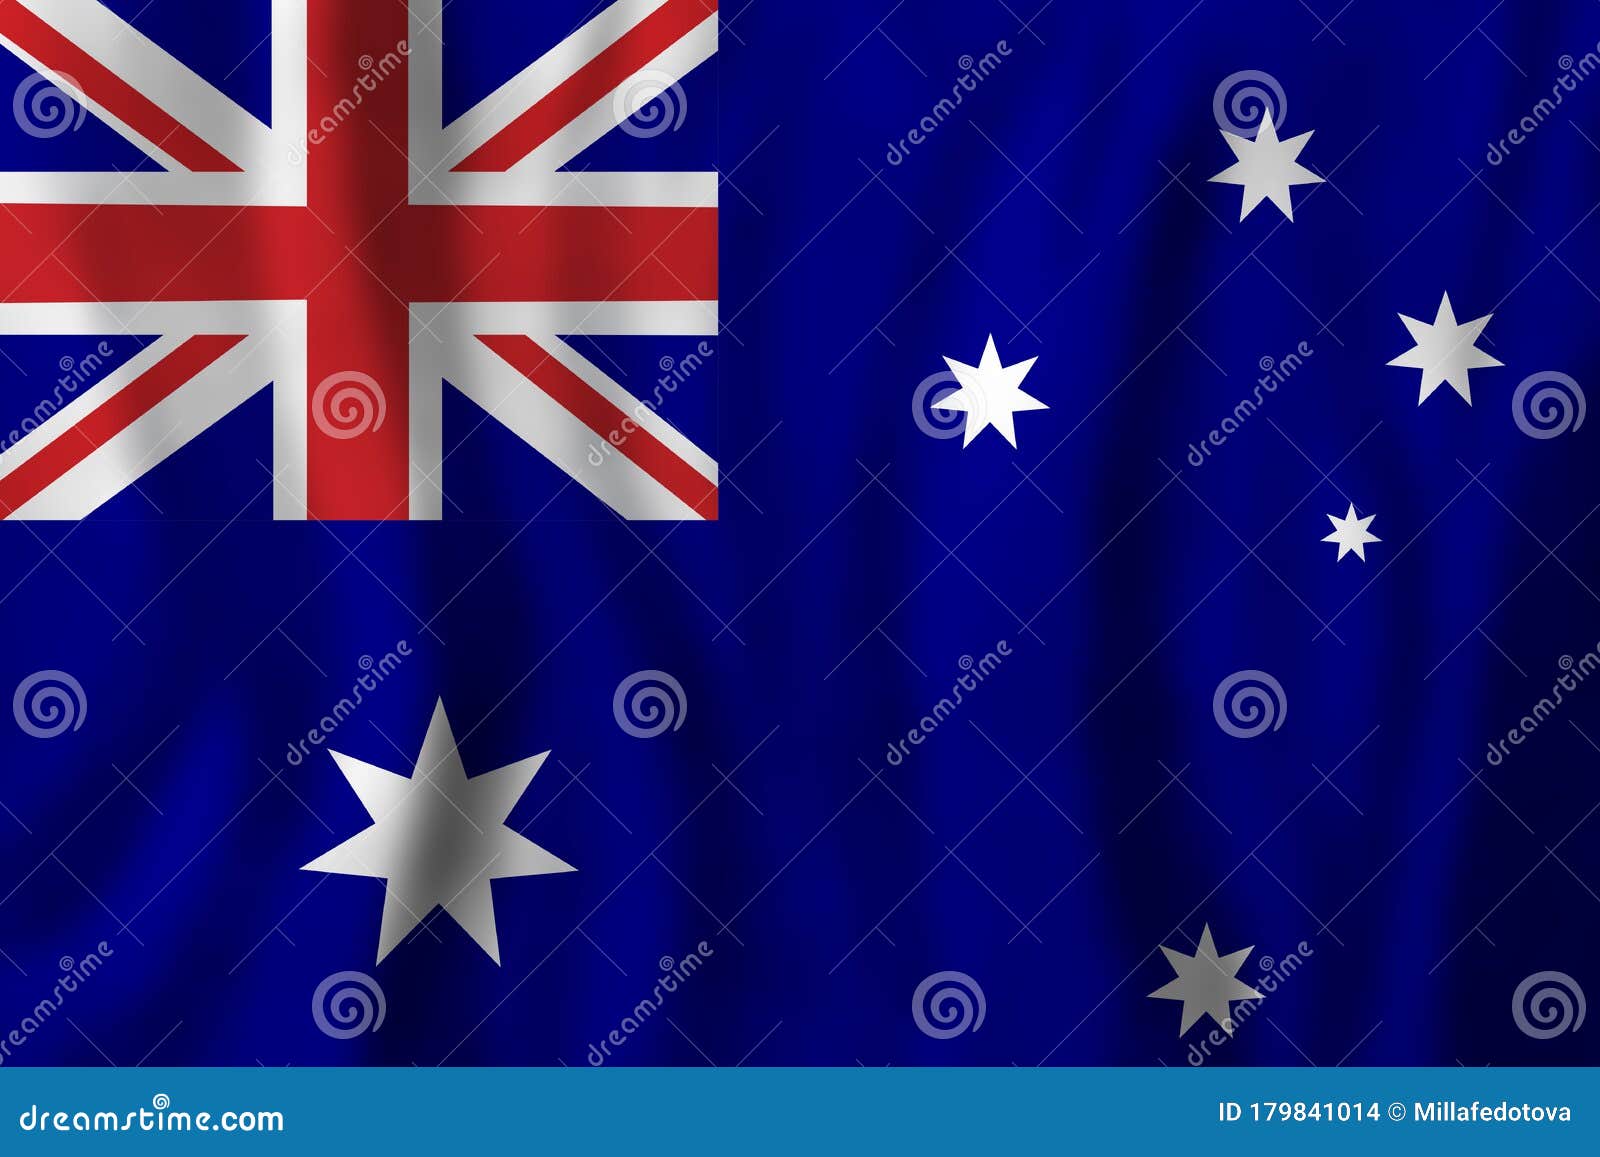 澳大利国旗亚高清图片_其他_文化艺术_图行天下图库